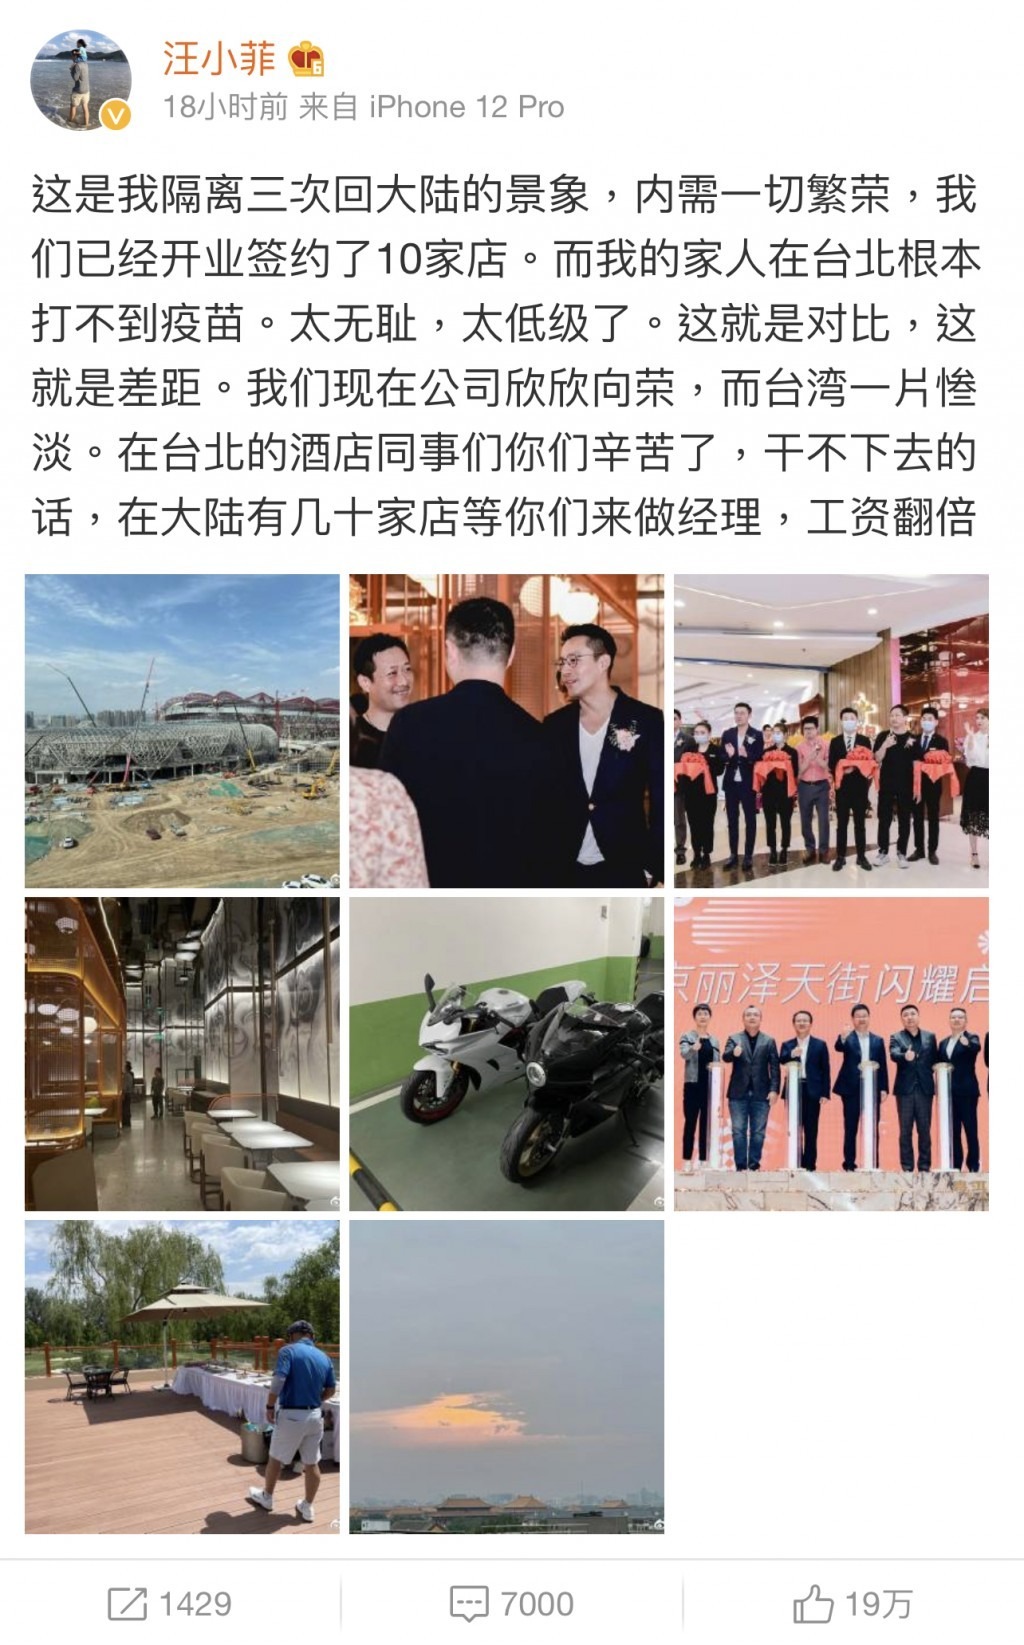 Uông Tiểu Phi đăng bài nói xấu Đài Loan trên Weibo. Ngay sau động thái này, Từ Hy Viên quyết định dứt tình. Ảnh chụp màn hình